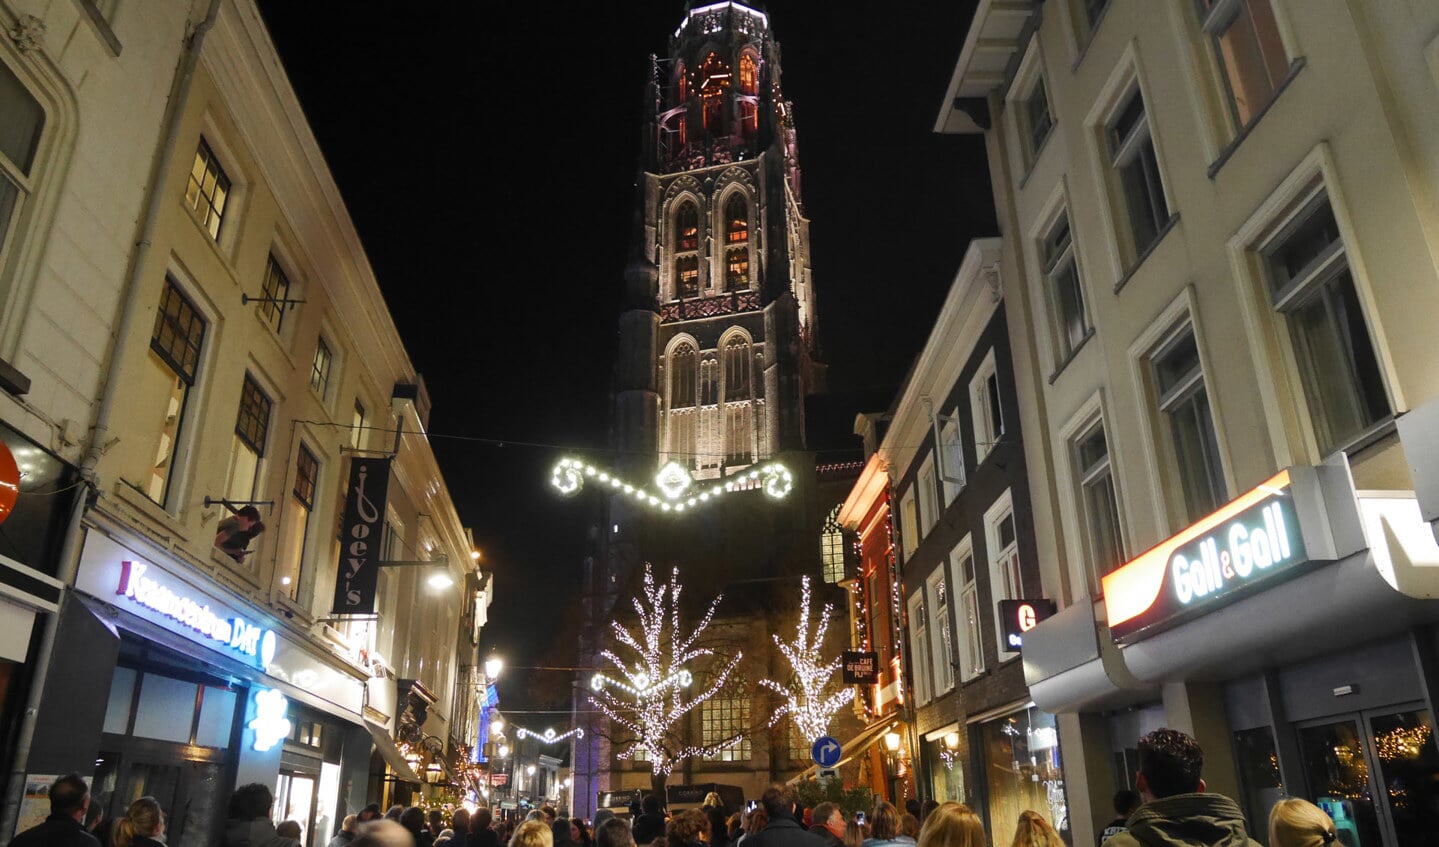 De ledverlichting op de Toren van de Grote Kerk werd woensdagavond 14 december met een show gedemonstreerd.